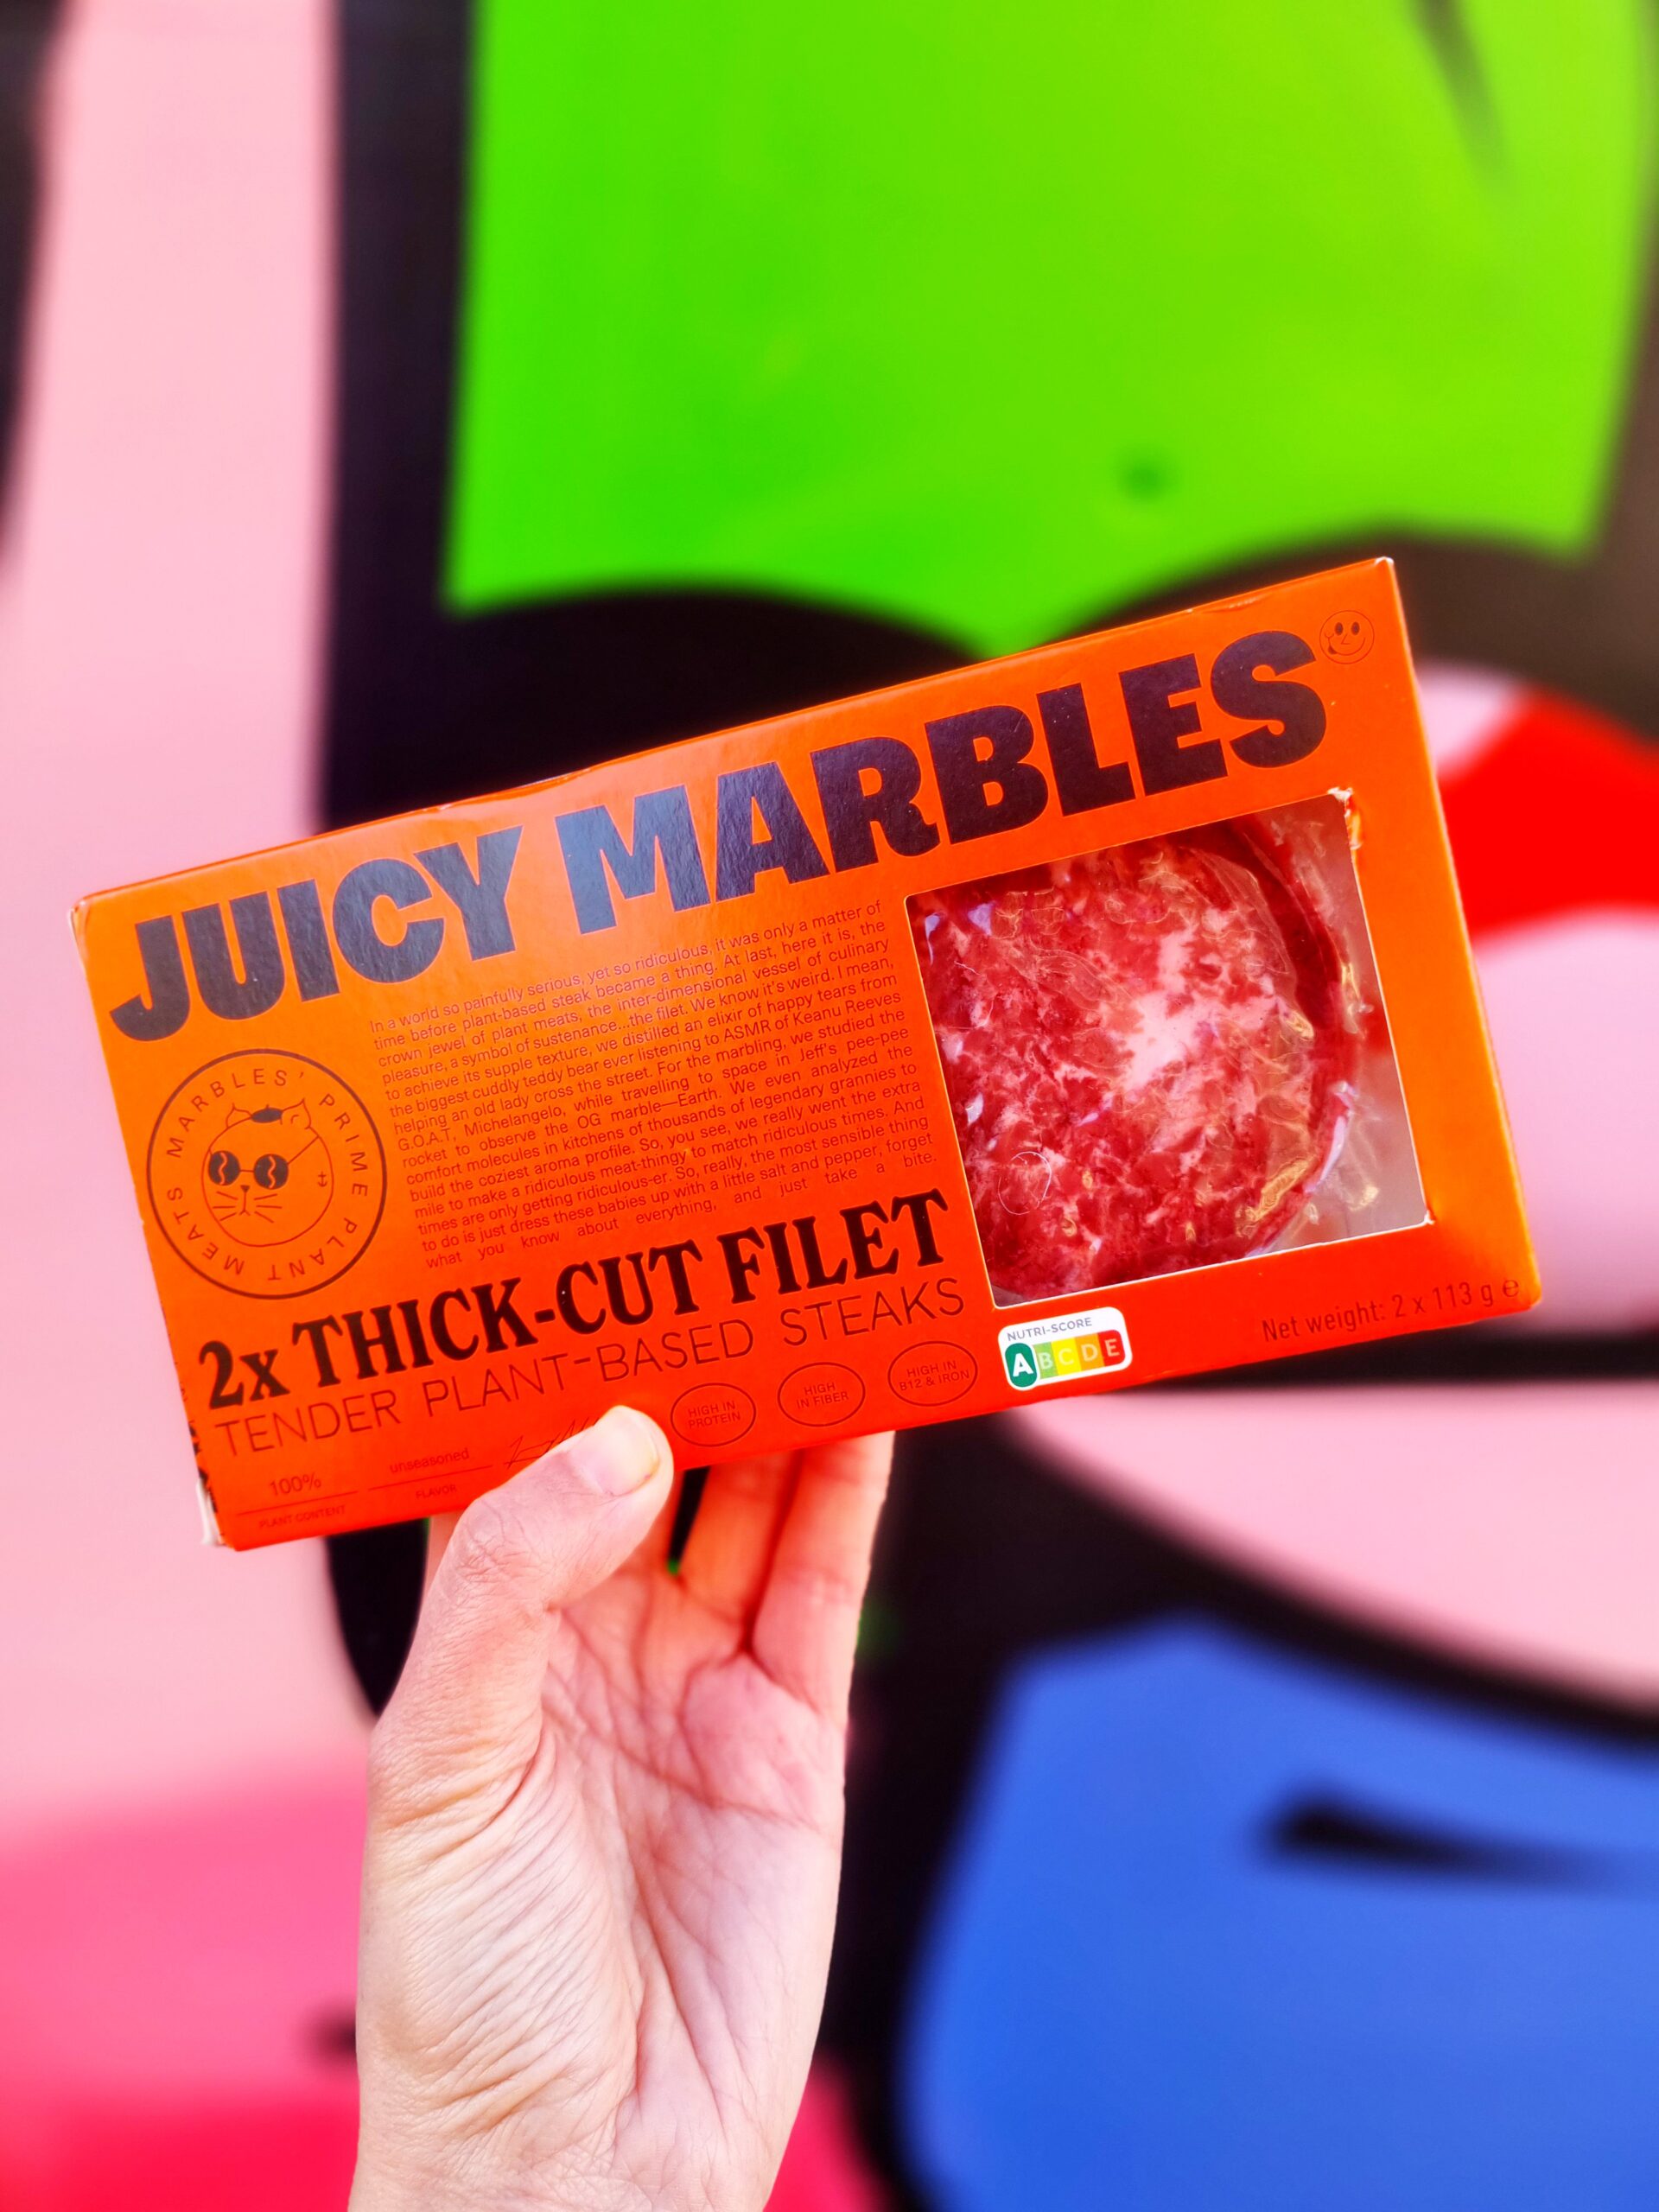 <img src="juicy.jpg" alt="juicy marbles vegan steaks"/>